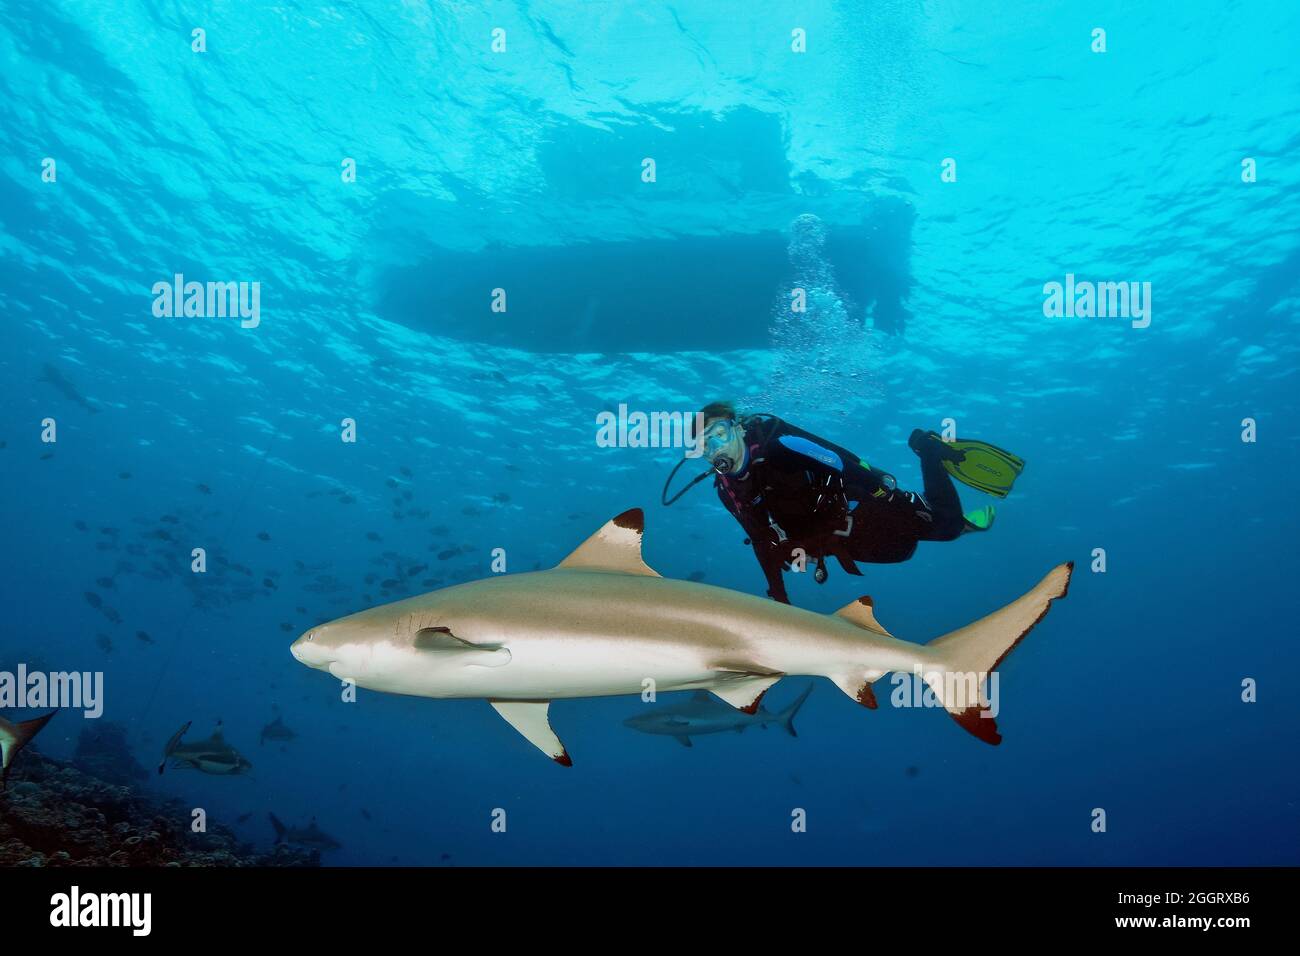 Taucherin betrachtet Schwarzspitzenriffhai (Carcharhinus melanopterus), darüber an der Wasseroberfläche Tauchboot, Indischer Ozean, Pazifik, Yap, FSM Stock Photo